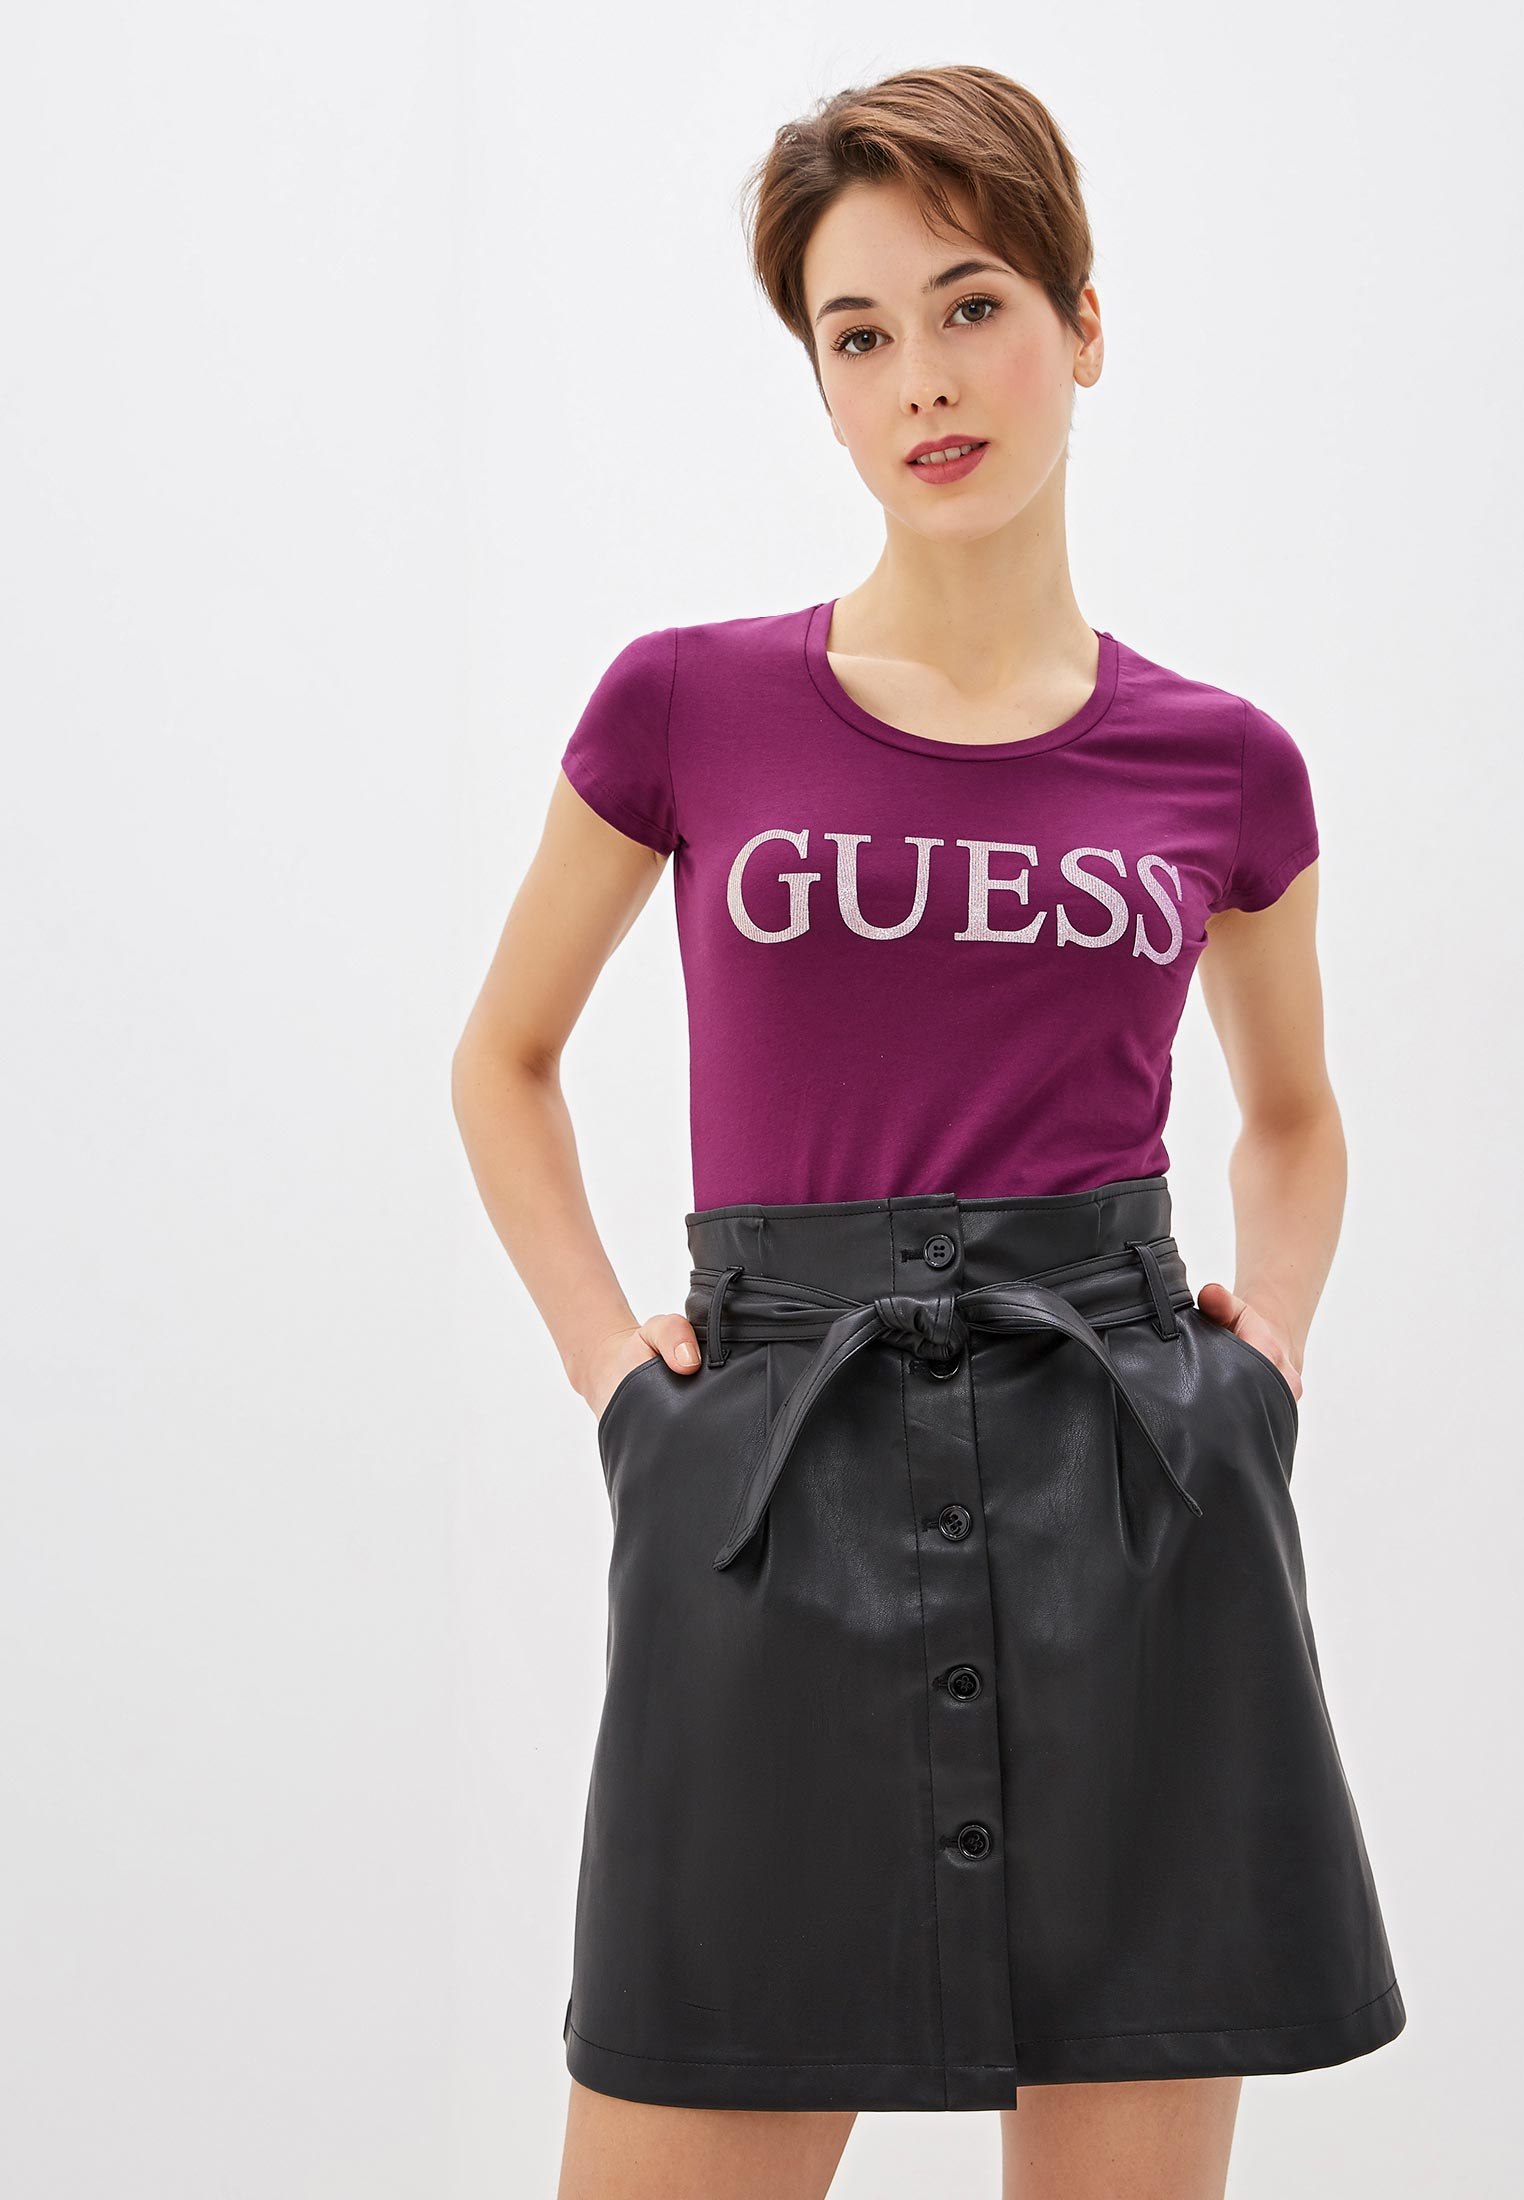 Ламода гесс. Guess одежда. Фиолетовая футболка Гесс женская. Guess футболка лиловая. Гесс одежда женская.